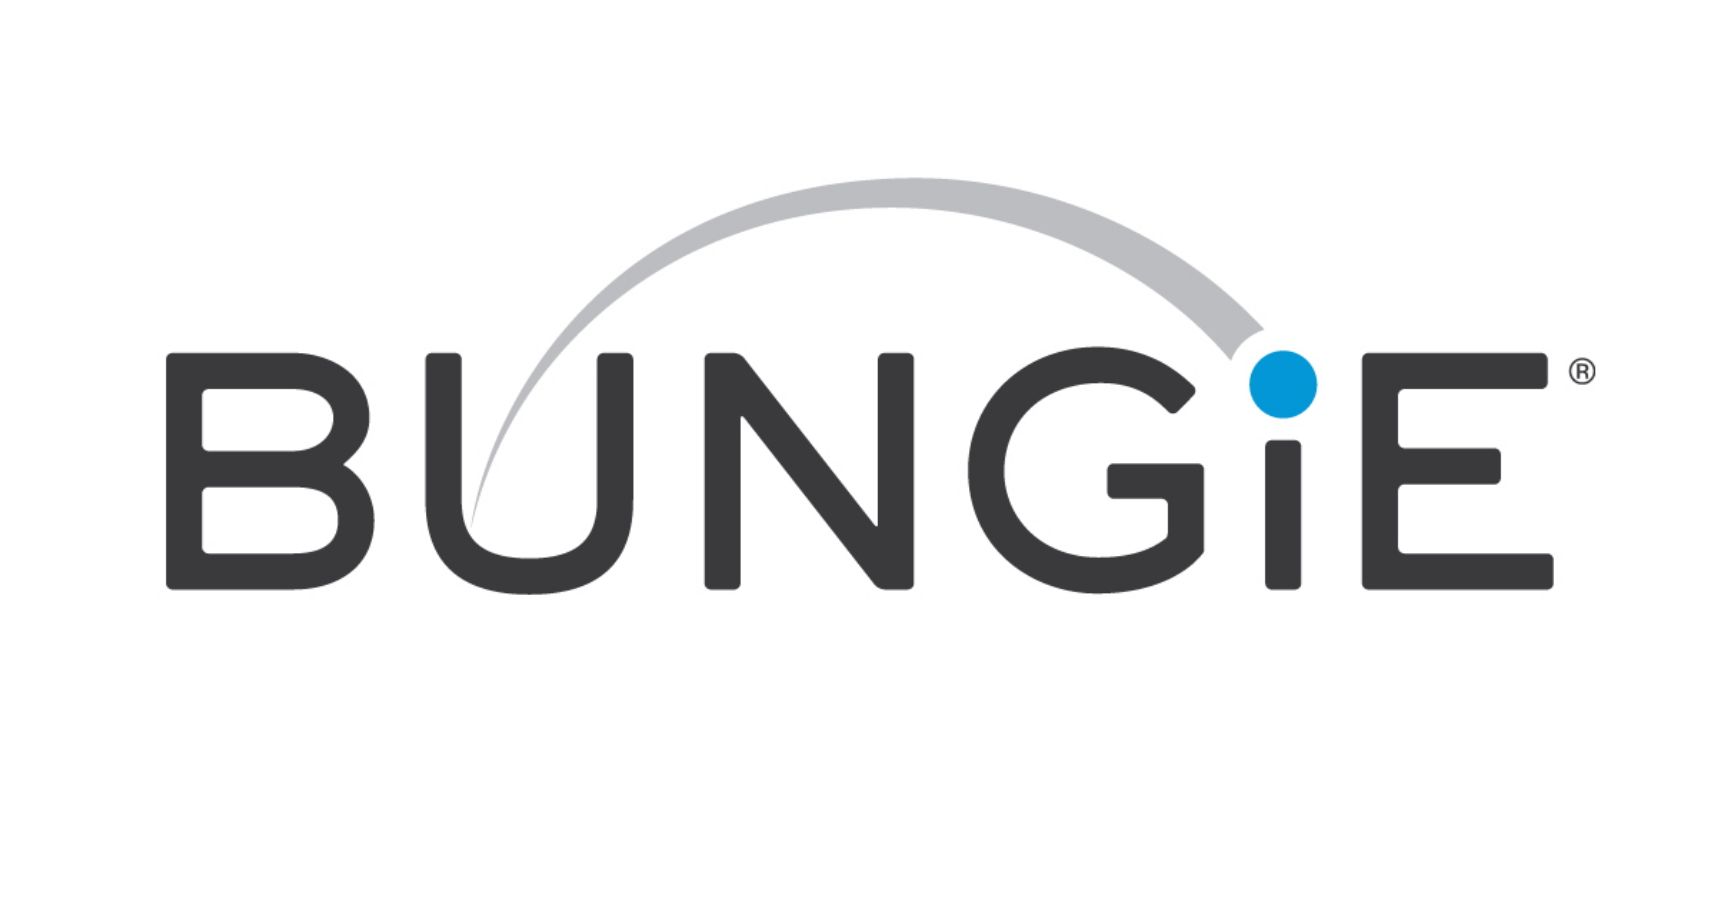 Bungie's logo